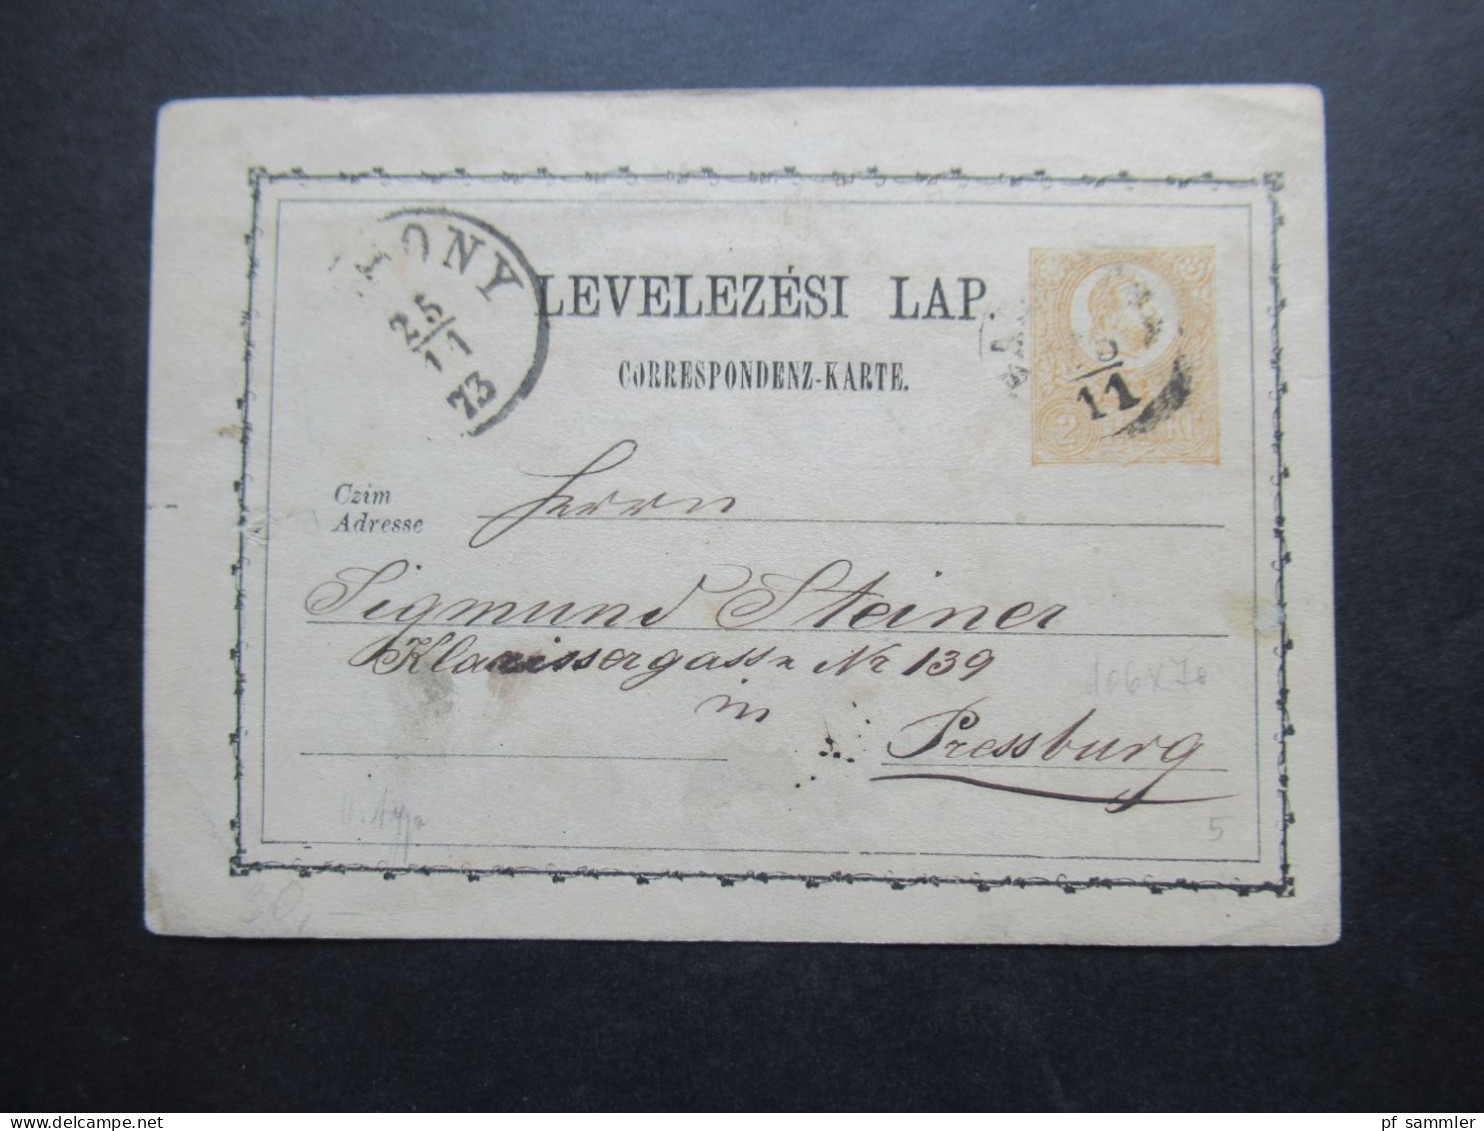 Ungarn Ganzsache Correspondenz Karte 25.11.1873 Nach Pressburg Gesendet - Postal Stationery